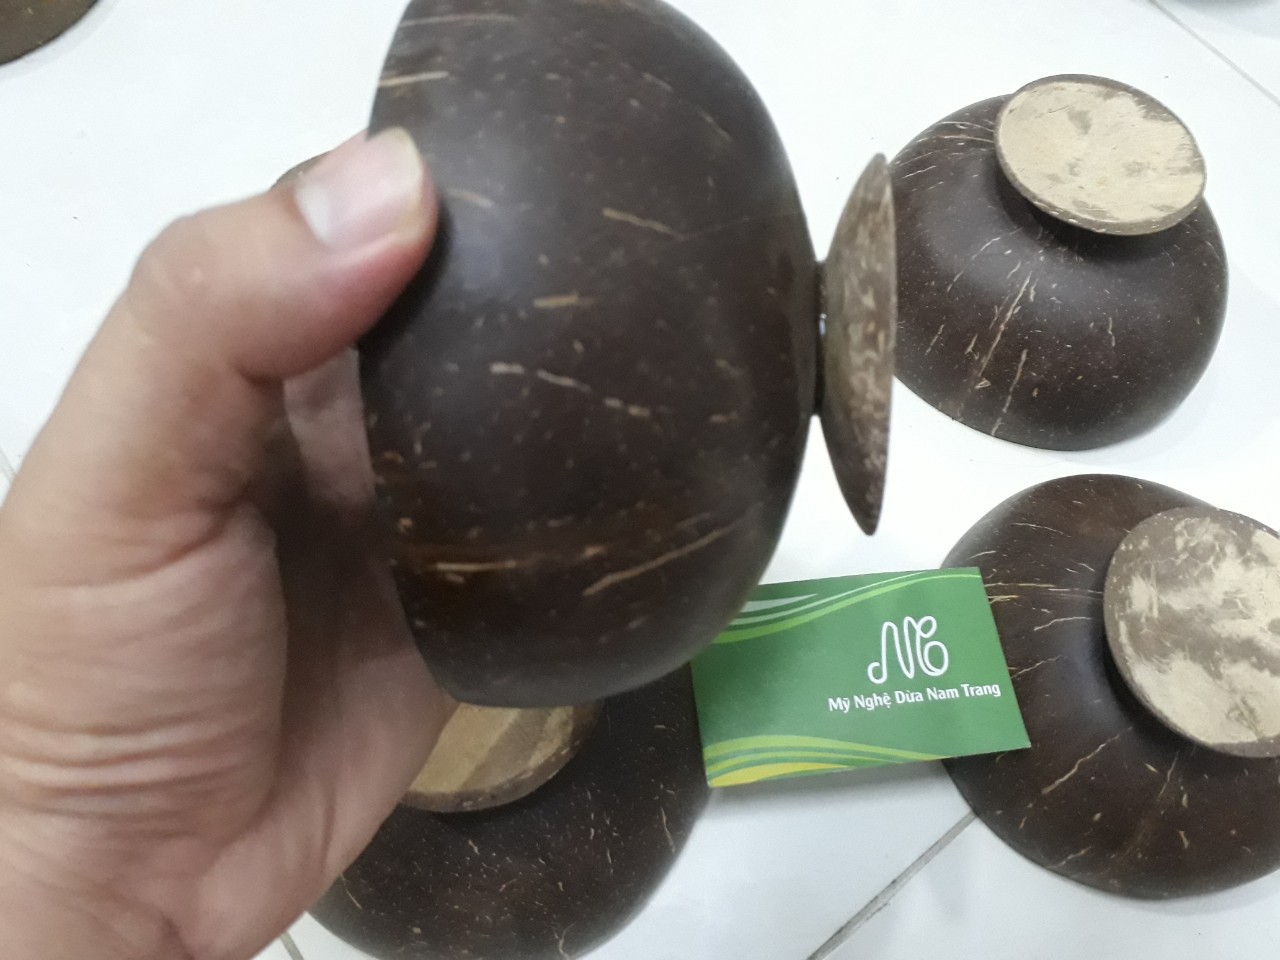 Bát gáo dừa có đế giá 27k - Mỹ Nghệ Dừa Nam Trang